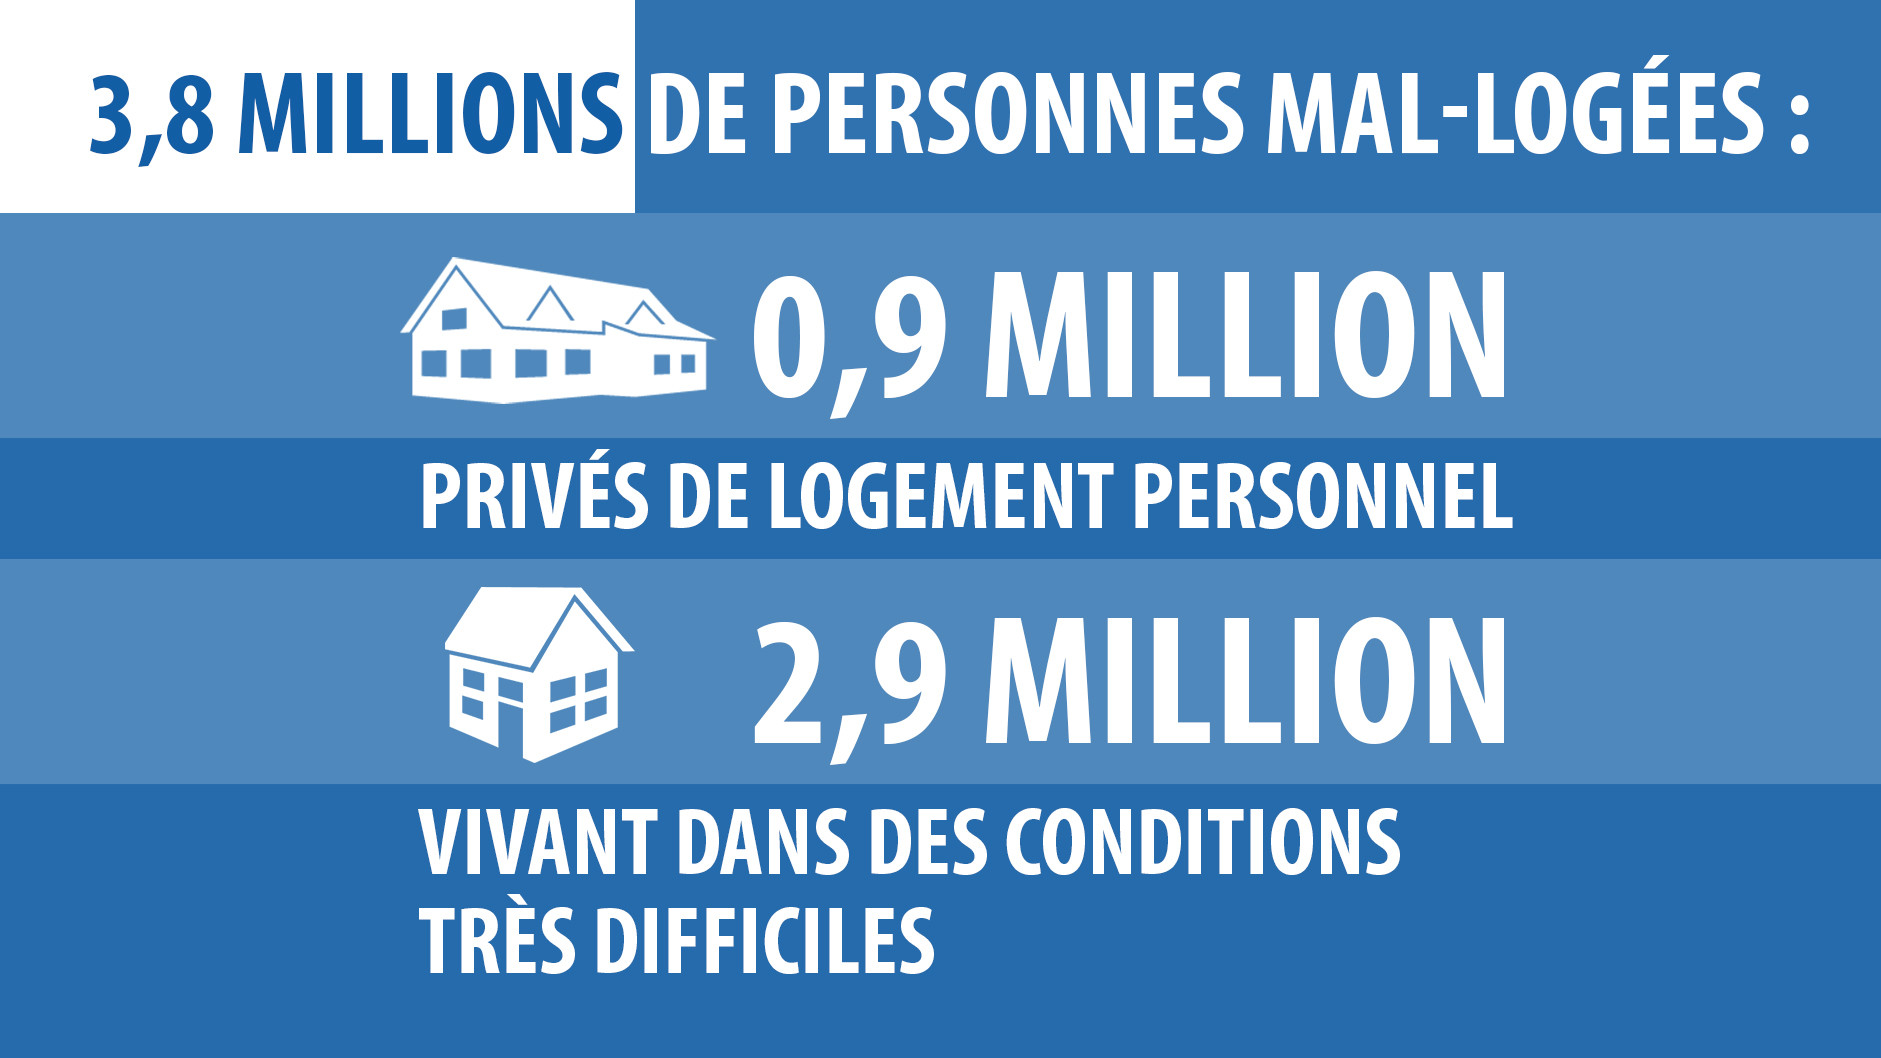 La France «malade du mal-logement» : un constat alertant en chiffres et en images